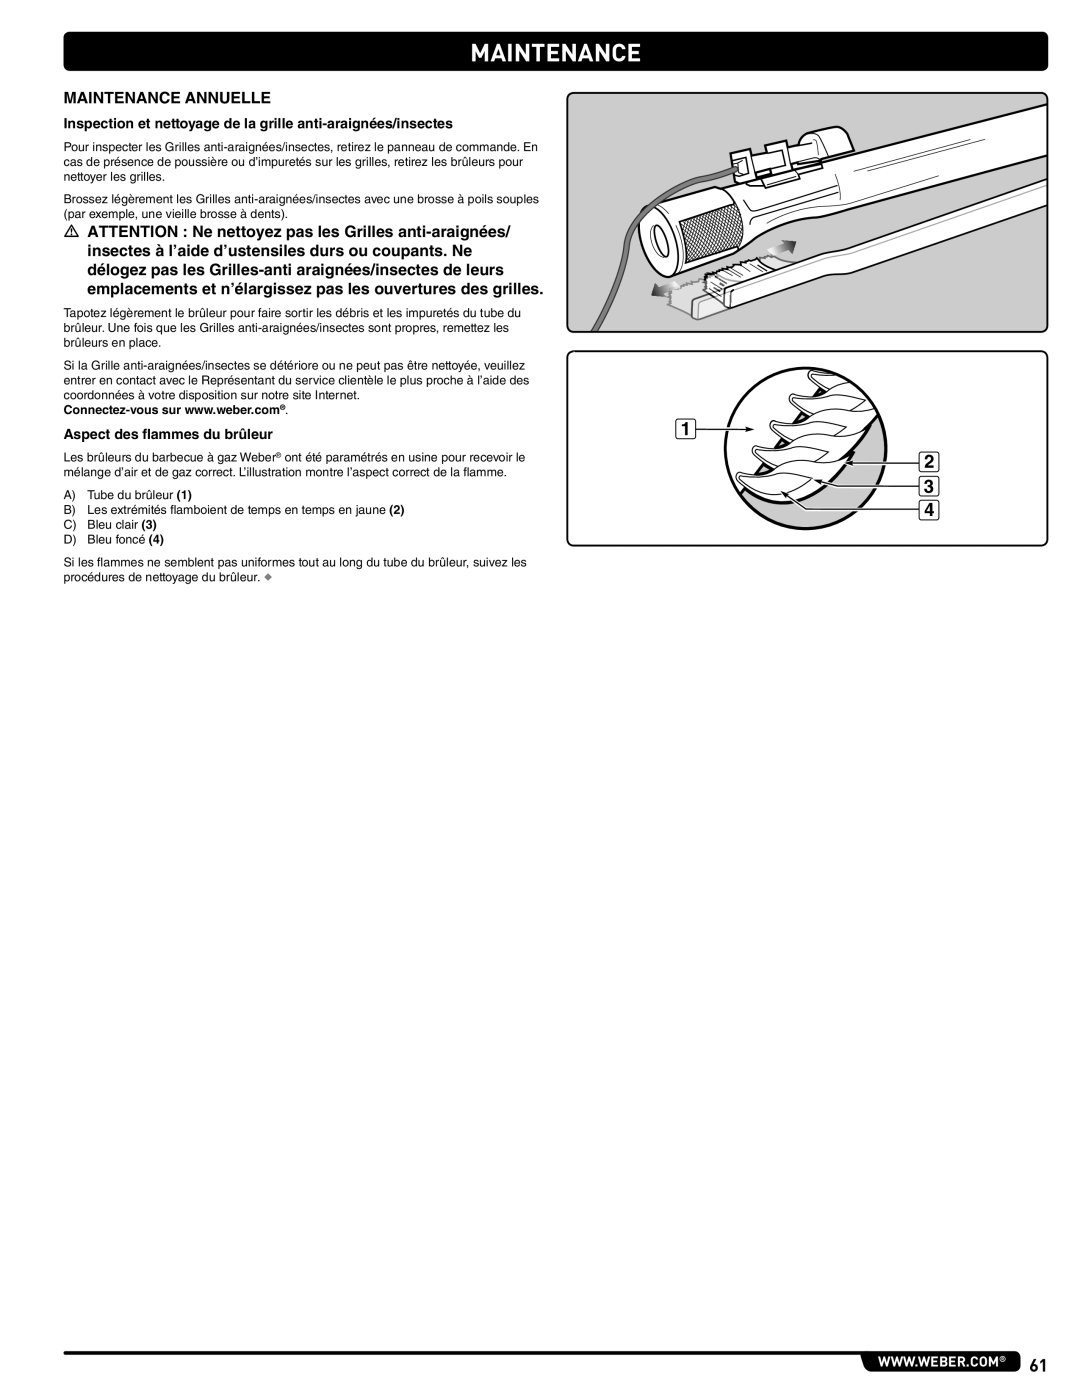 Weber 56515 manual Maintenance Annuelle, Inspection et nettoyage de la grille anti-araignées/insectes 